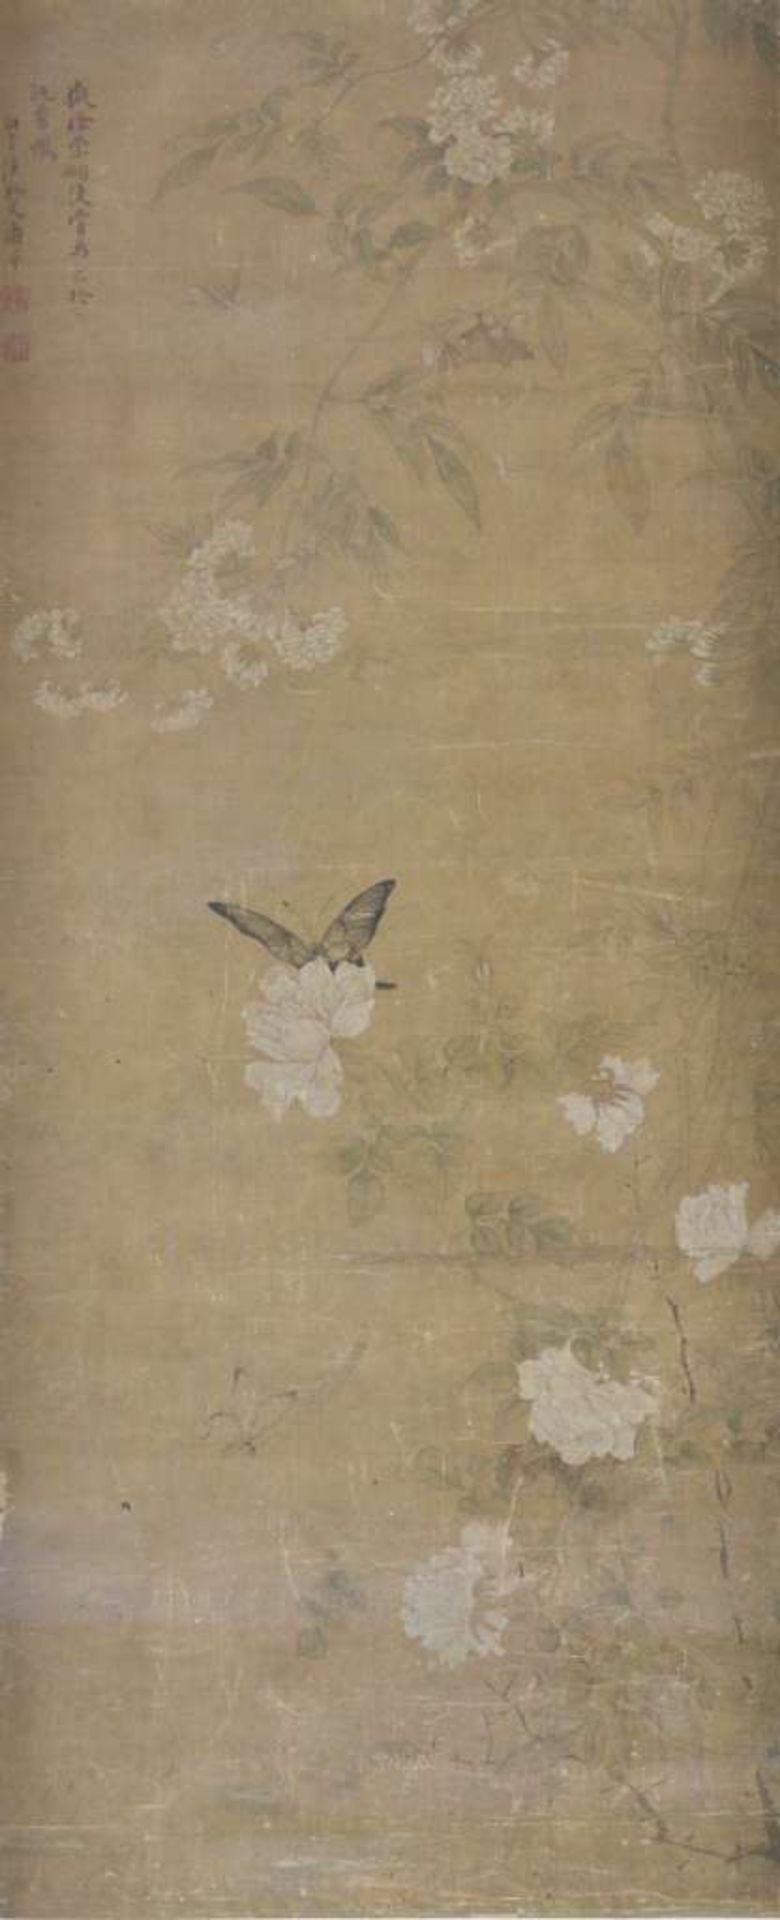 Kakemono, Tuschezeichnung, wohl Edo Zeit, dargestellt die Äste blühender Rosensträucher, in deren